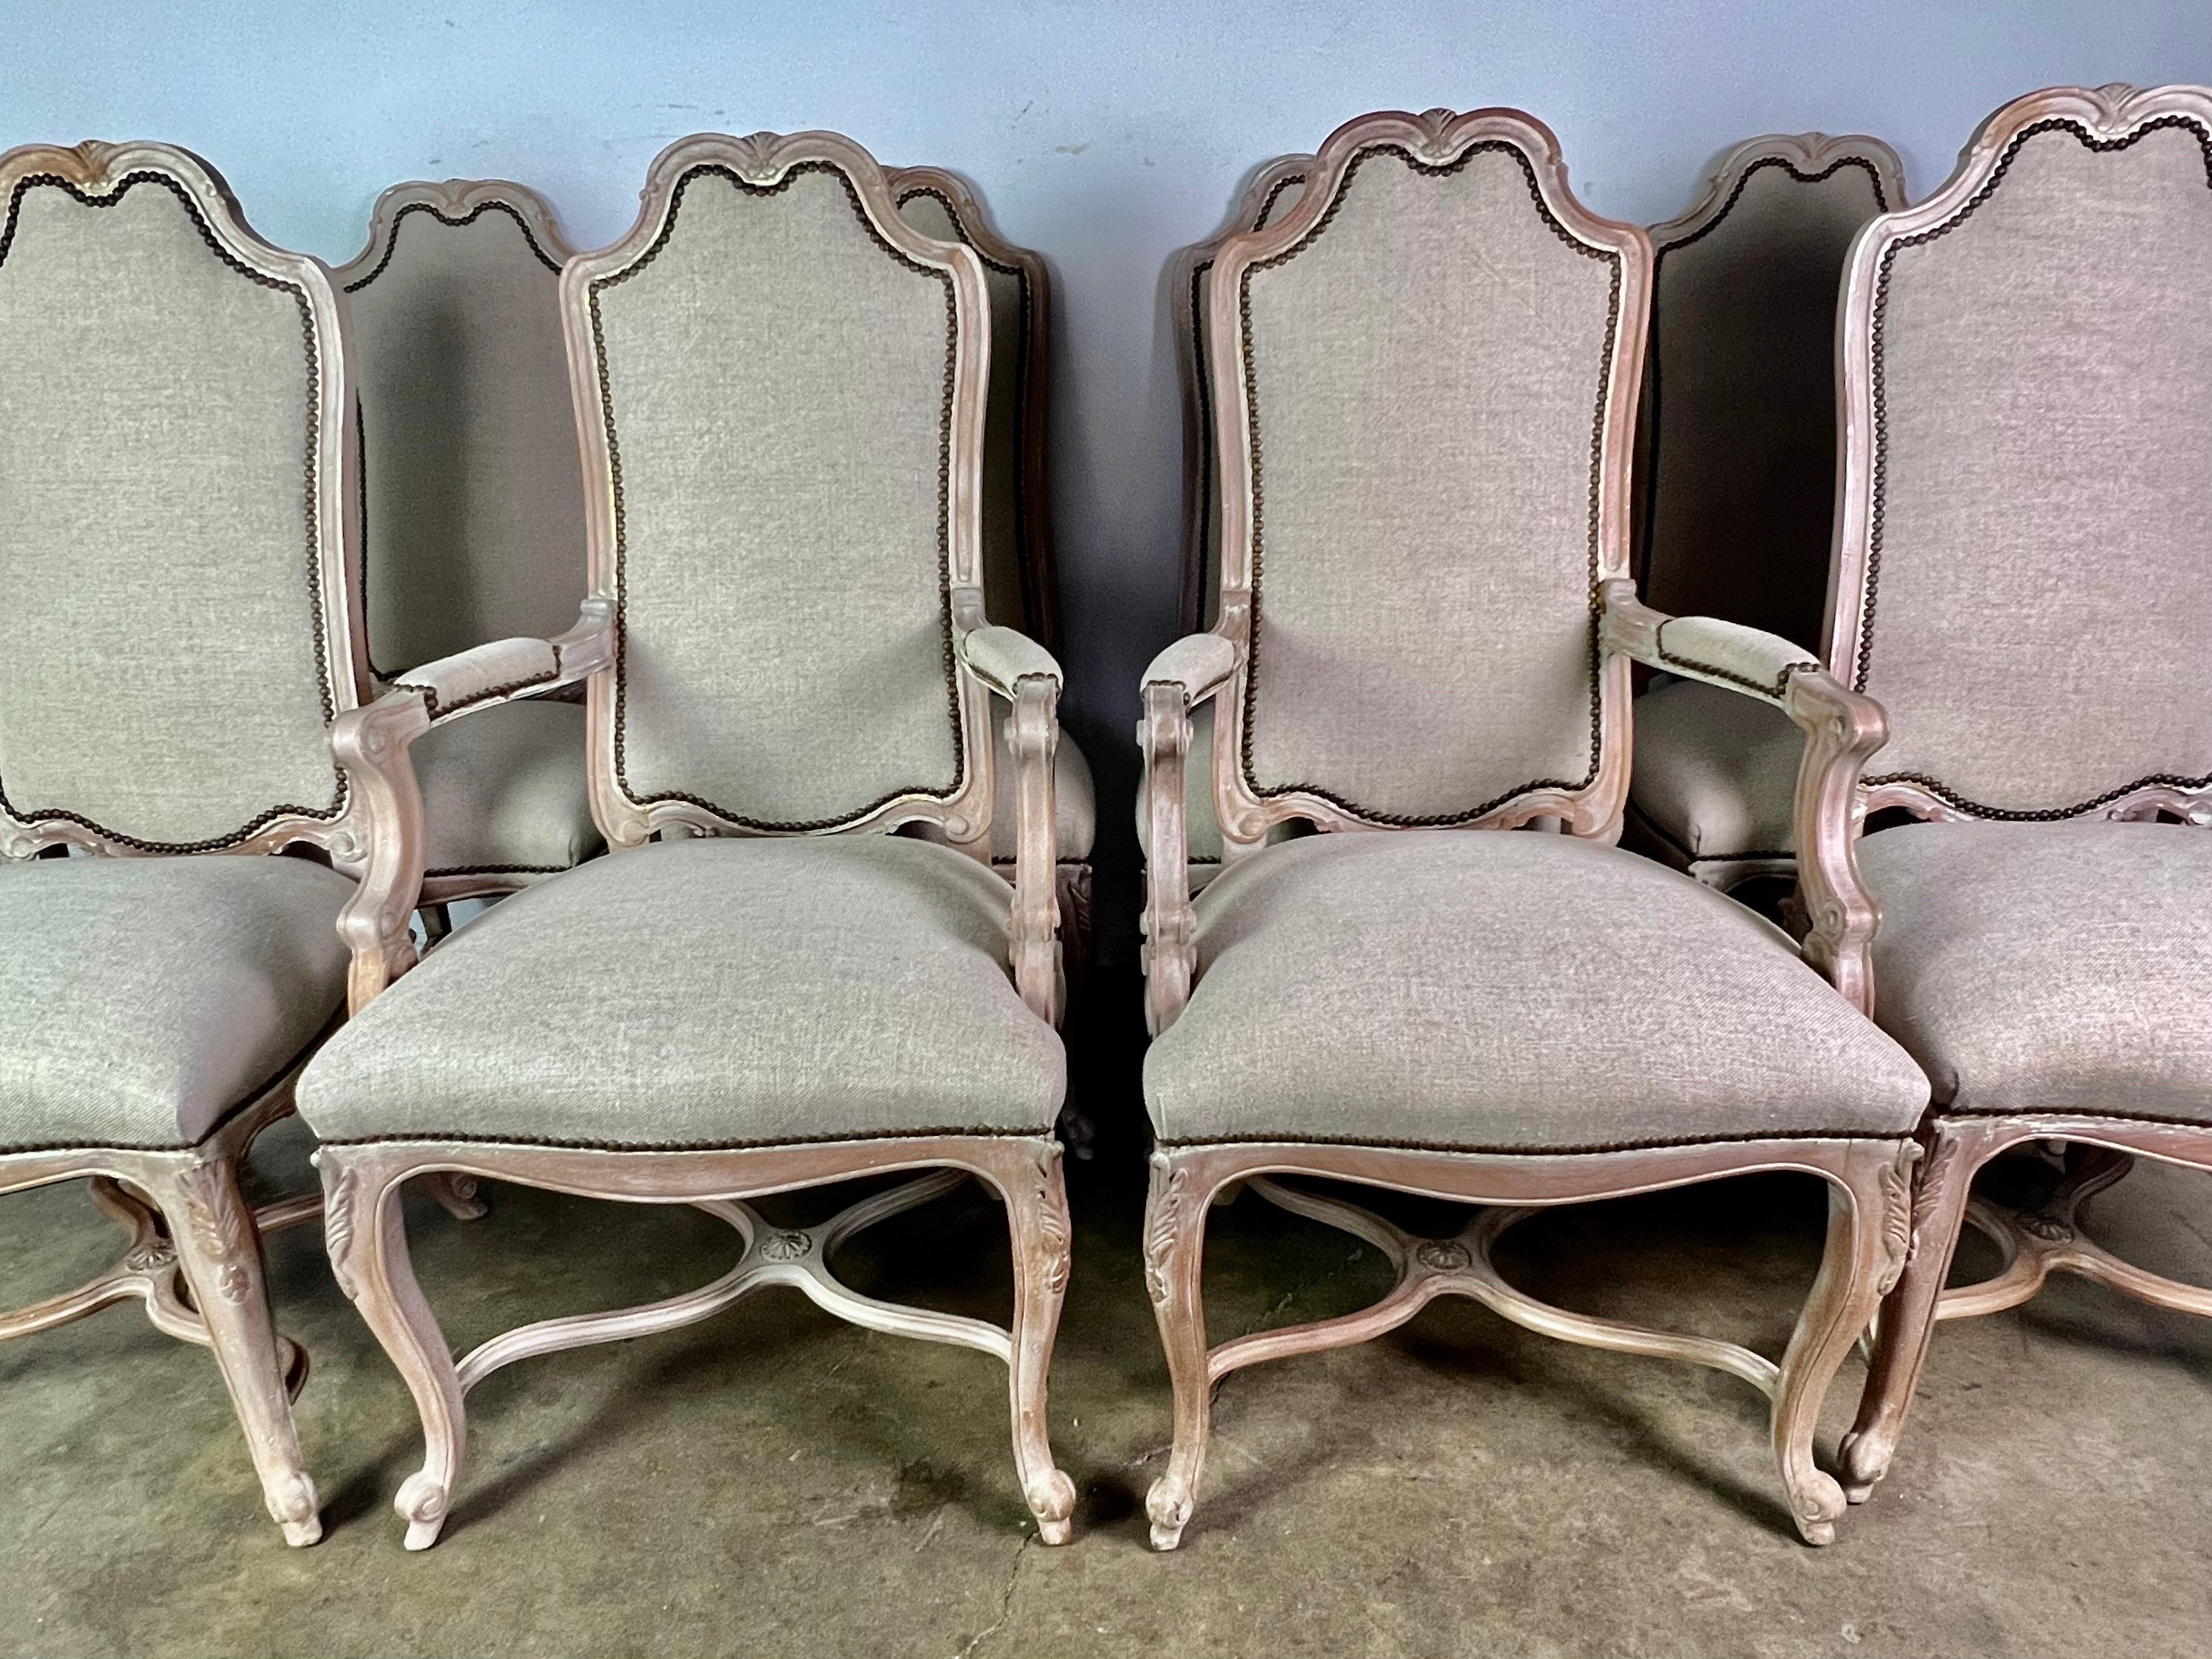 Satz von (8) französischen Esszimmerstühlen im Louis XV-Stil aus gebleichtem Nussbaumholz. Die Stühle sind neu mit gewaschenem belgischem Leinen gepolstert und mit Nagelköpfen verziert. Die Stühle stehen auf vier Cabriole-Beinen mit Widderkopffüßen.